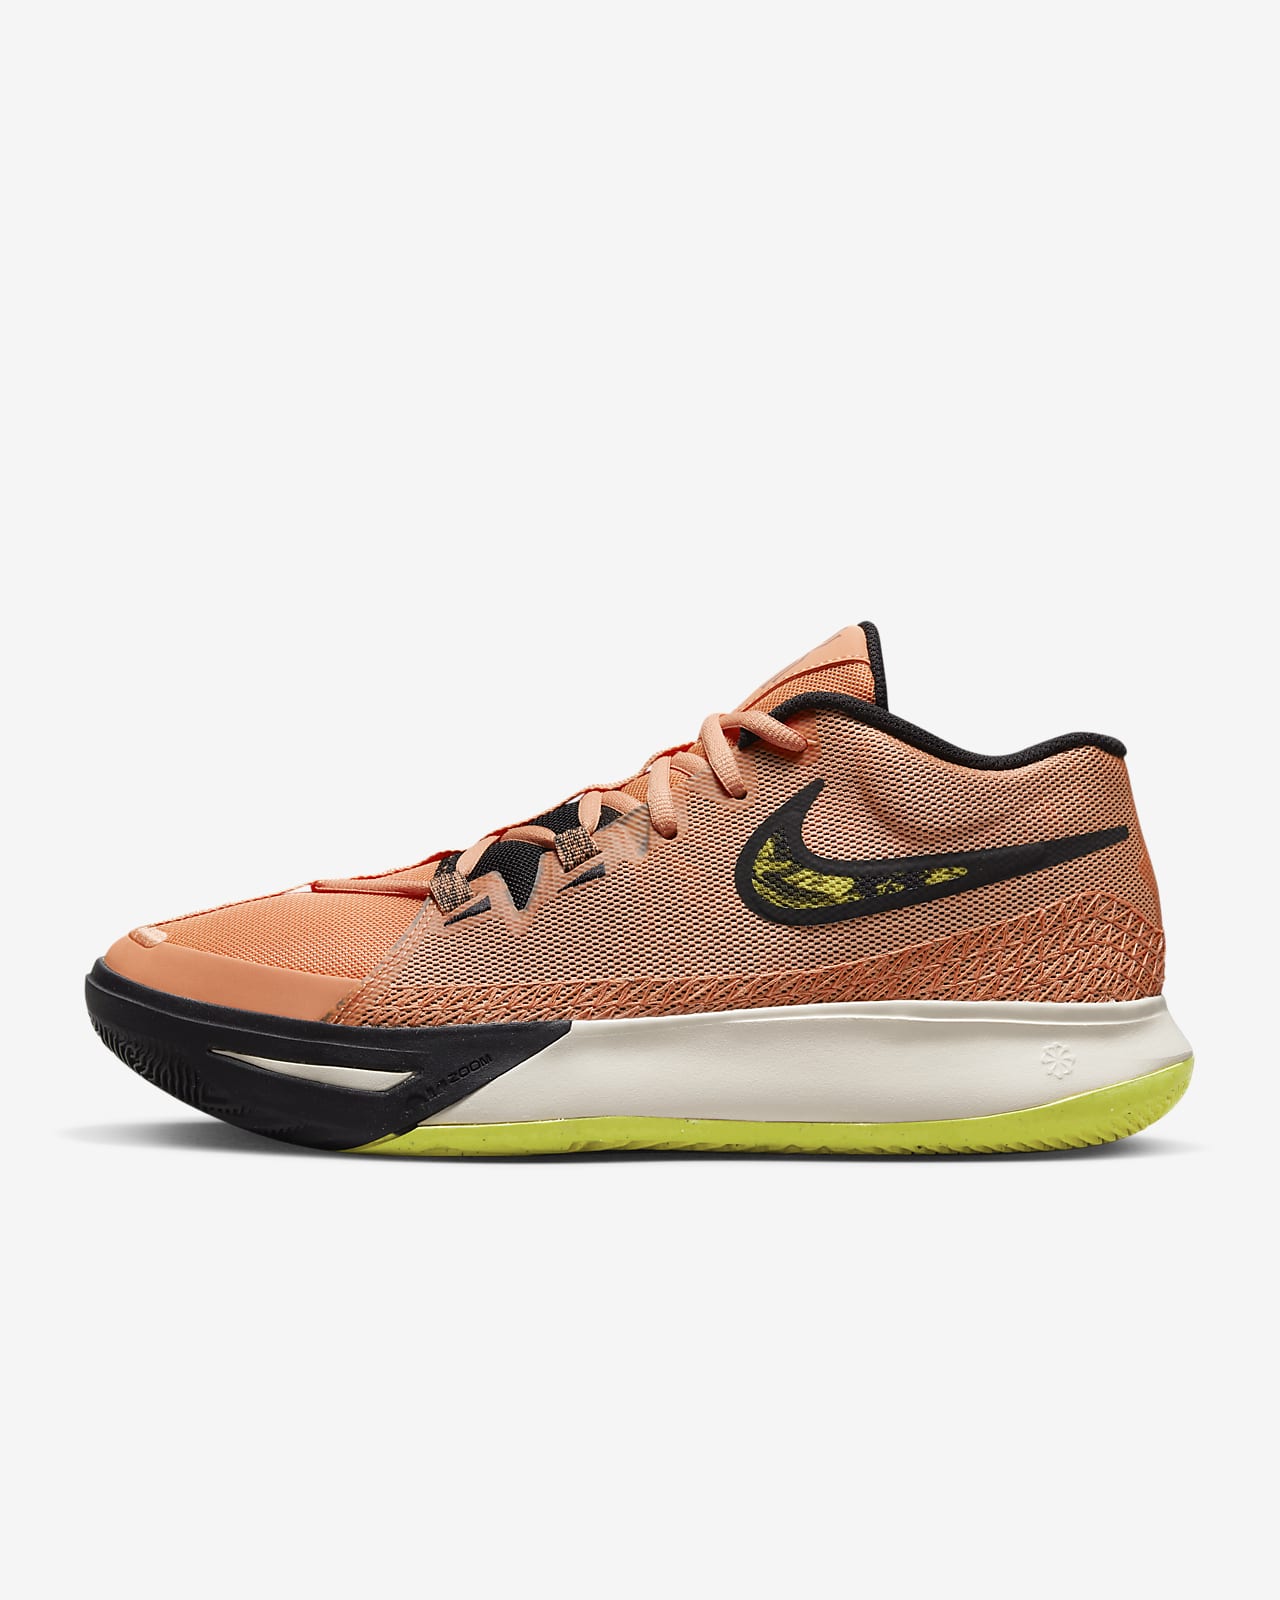 Kyrie Flytrap 6 nike pegasus 42.5 Basketball Shoes. Nike SK